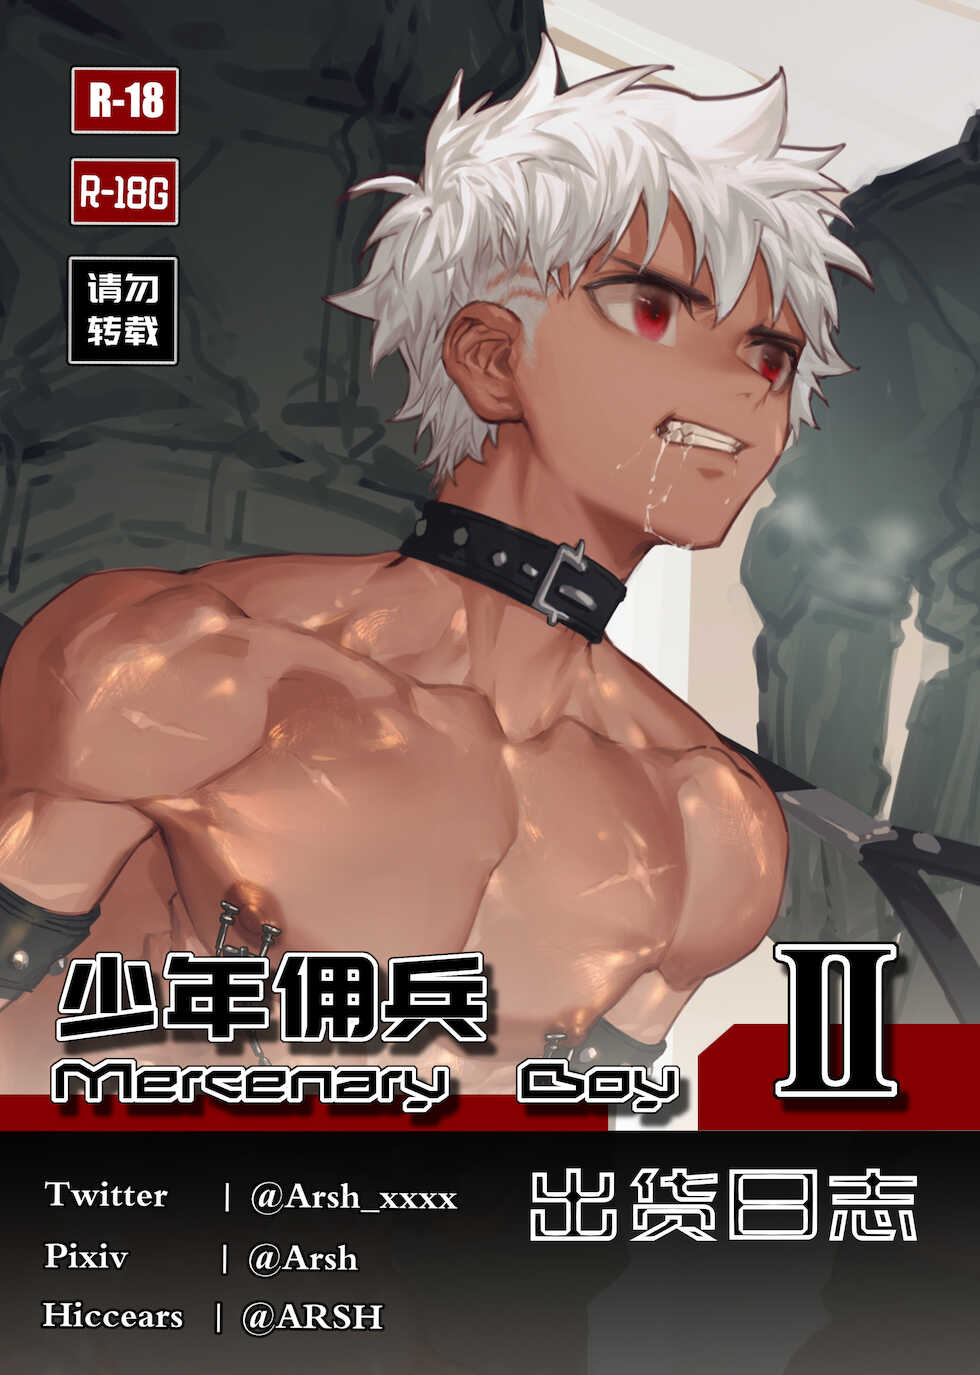 Mercenary Boy II (English) (incomplete) - Page 1